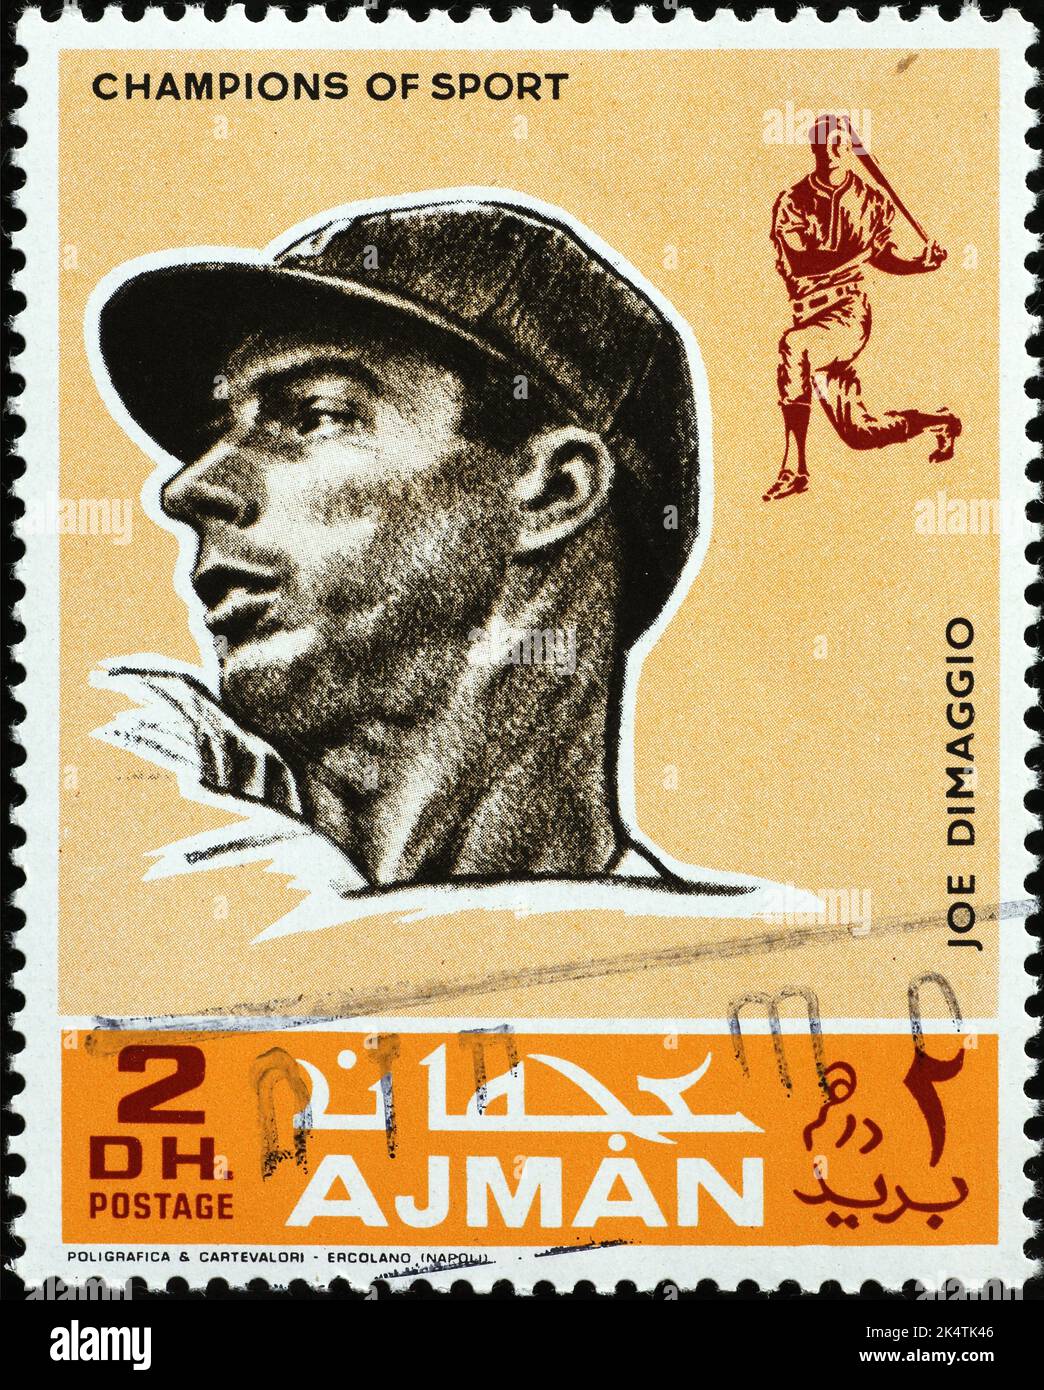 Baseball player Joe Di Maggio on postage stamp of Ajman Stock Photo